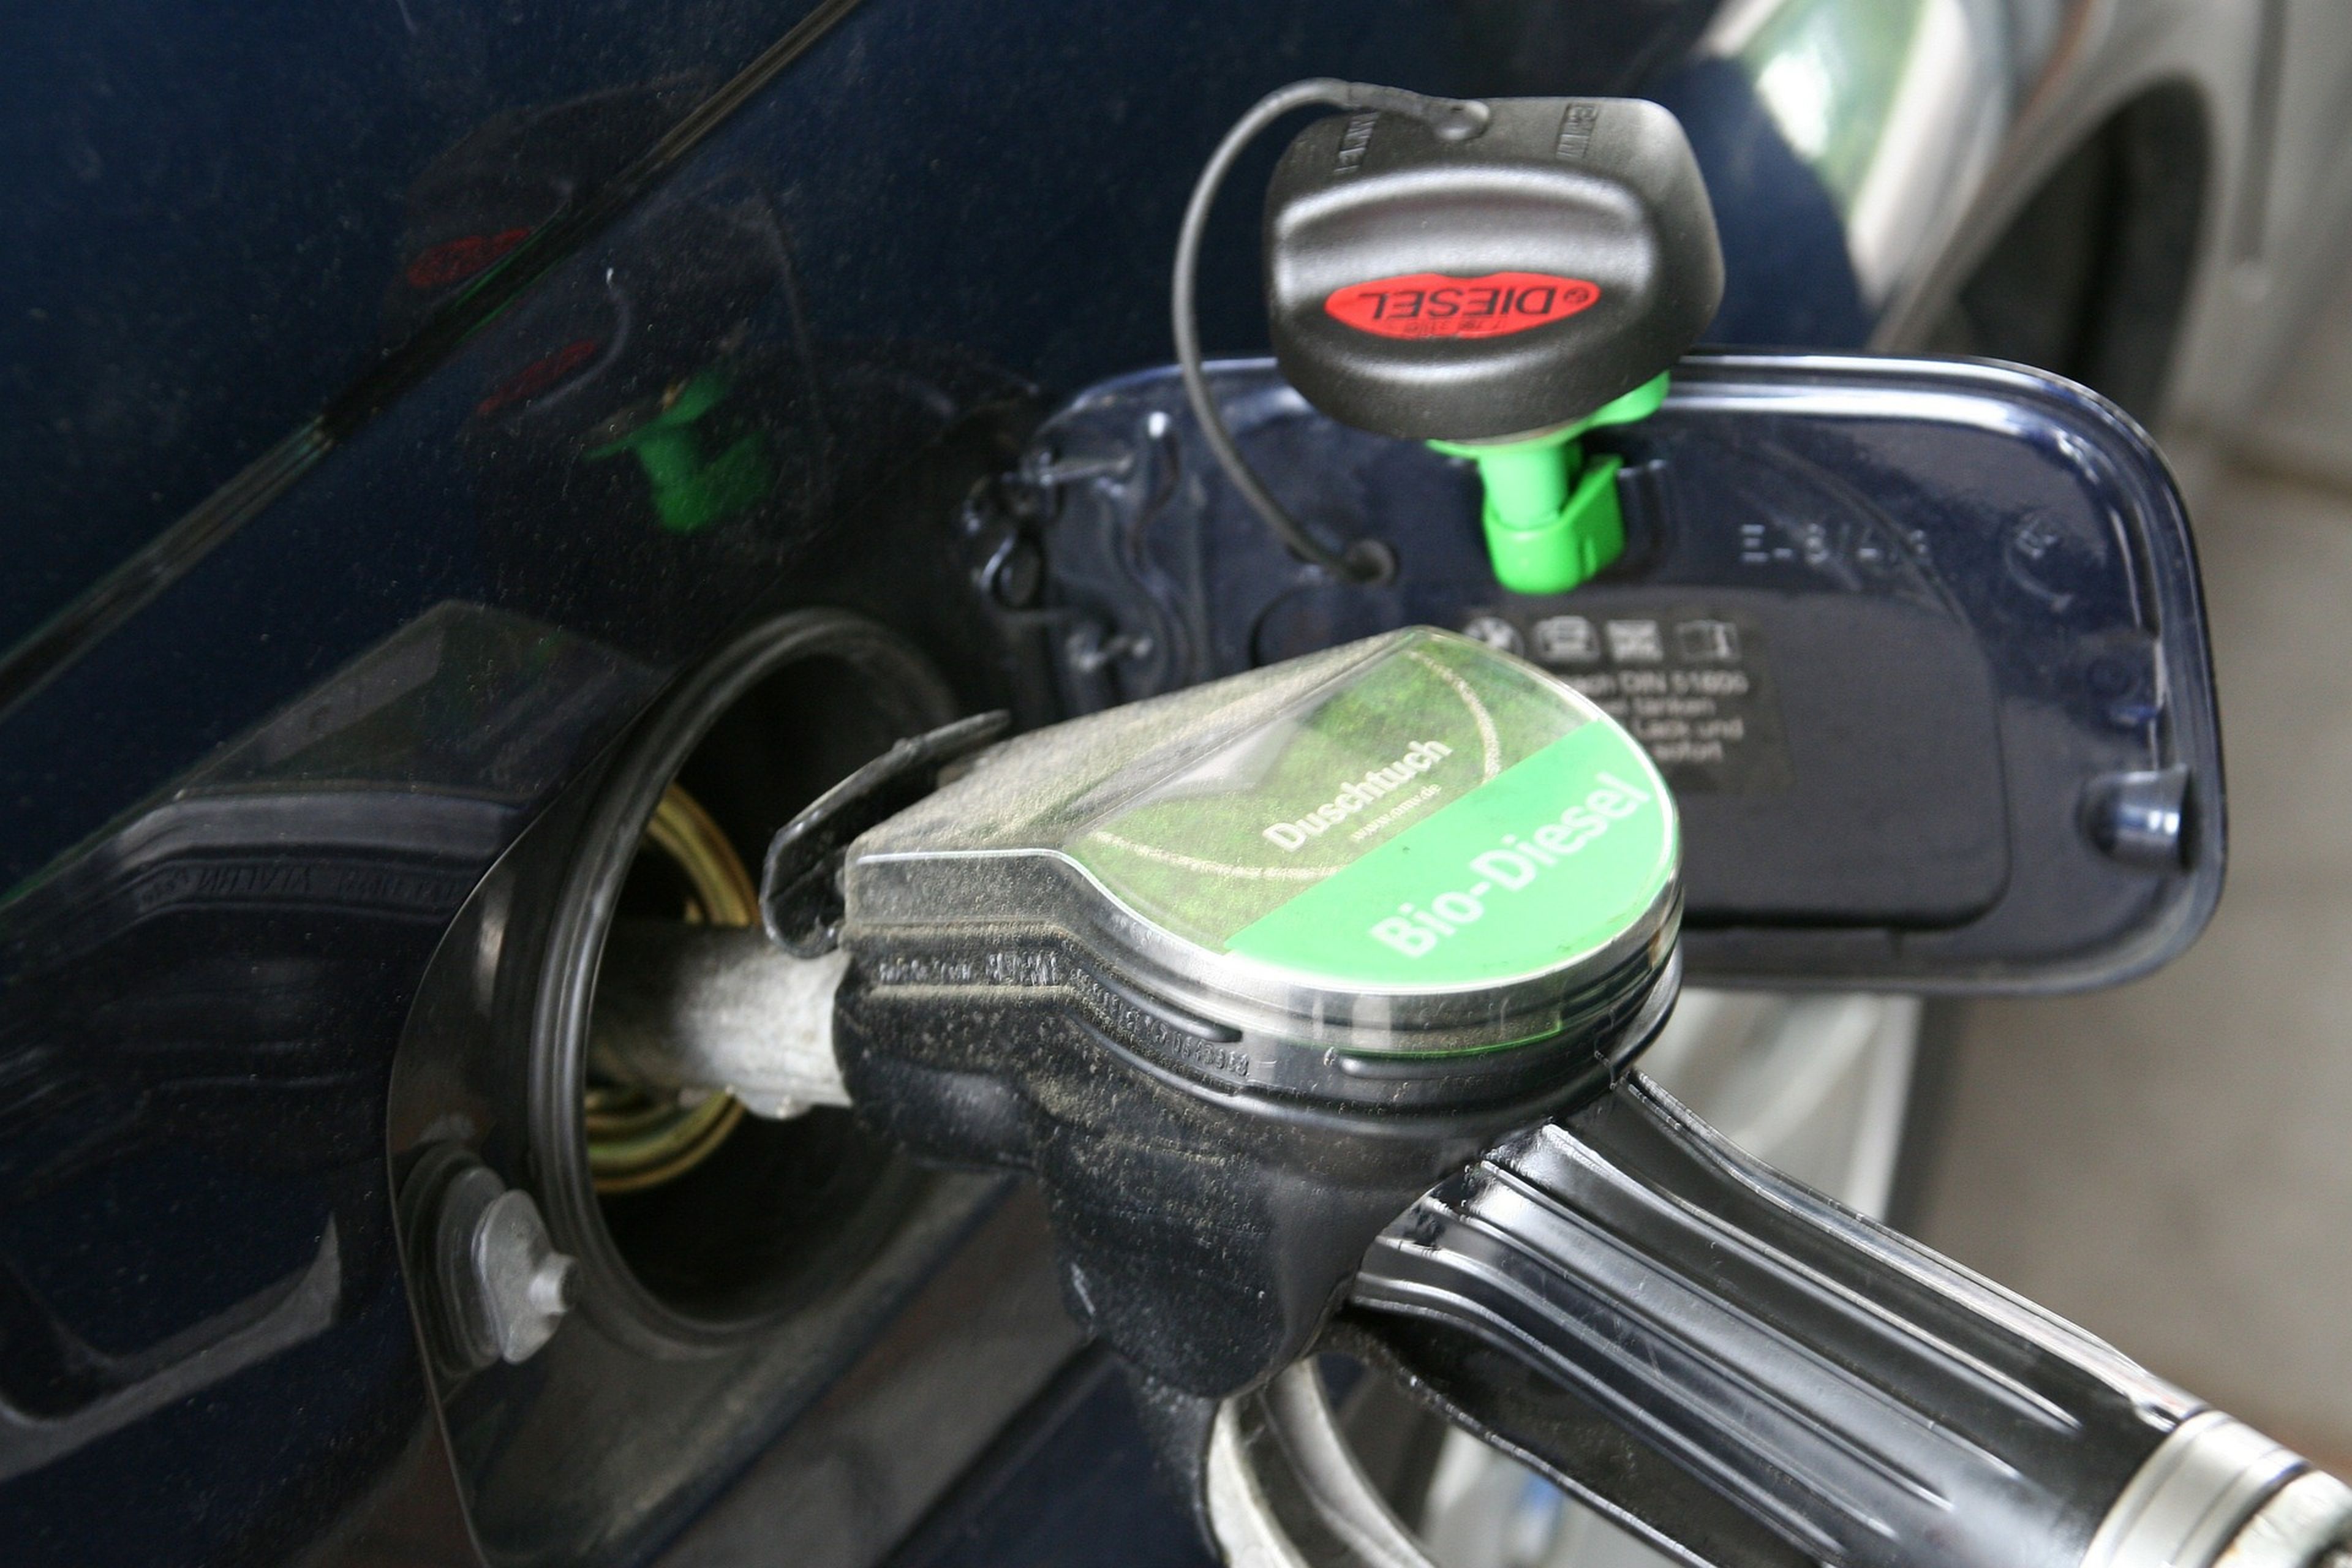 El desplome del petróleo deja el litro de diésel por debajo del euro en la mitad de gasolineras del país